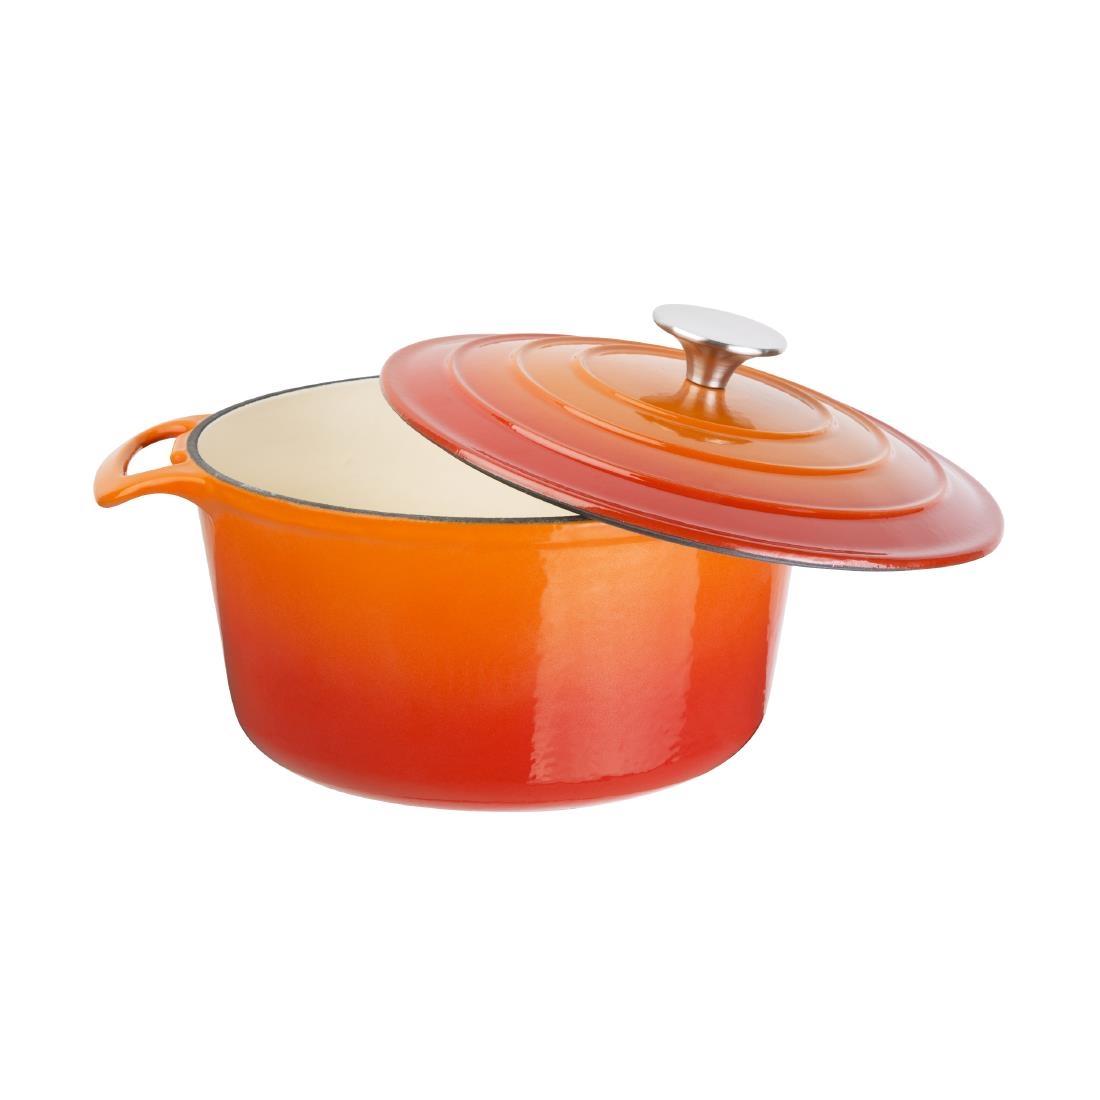 Vogue Orange Round Casserole Dish 4Ltr - GH303  - 4